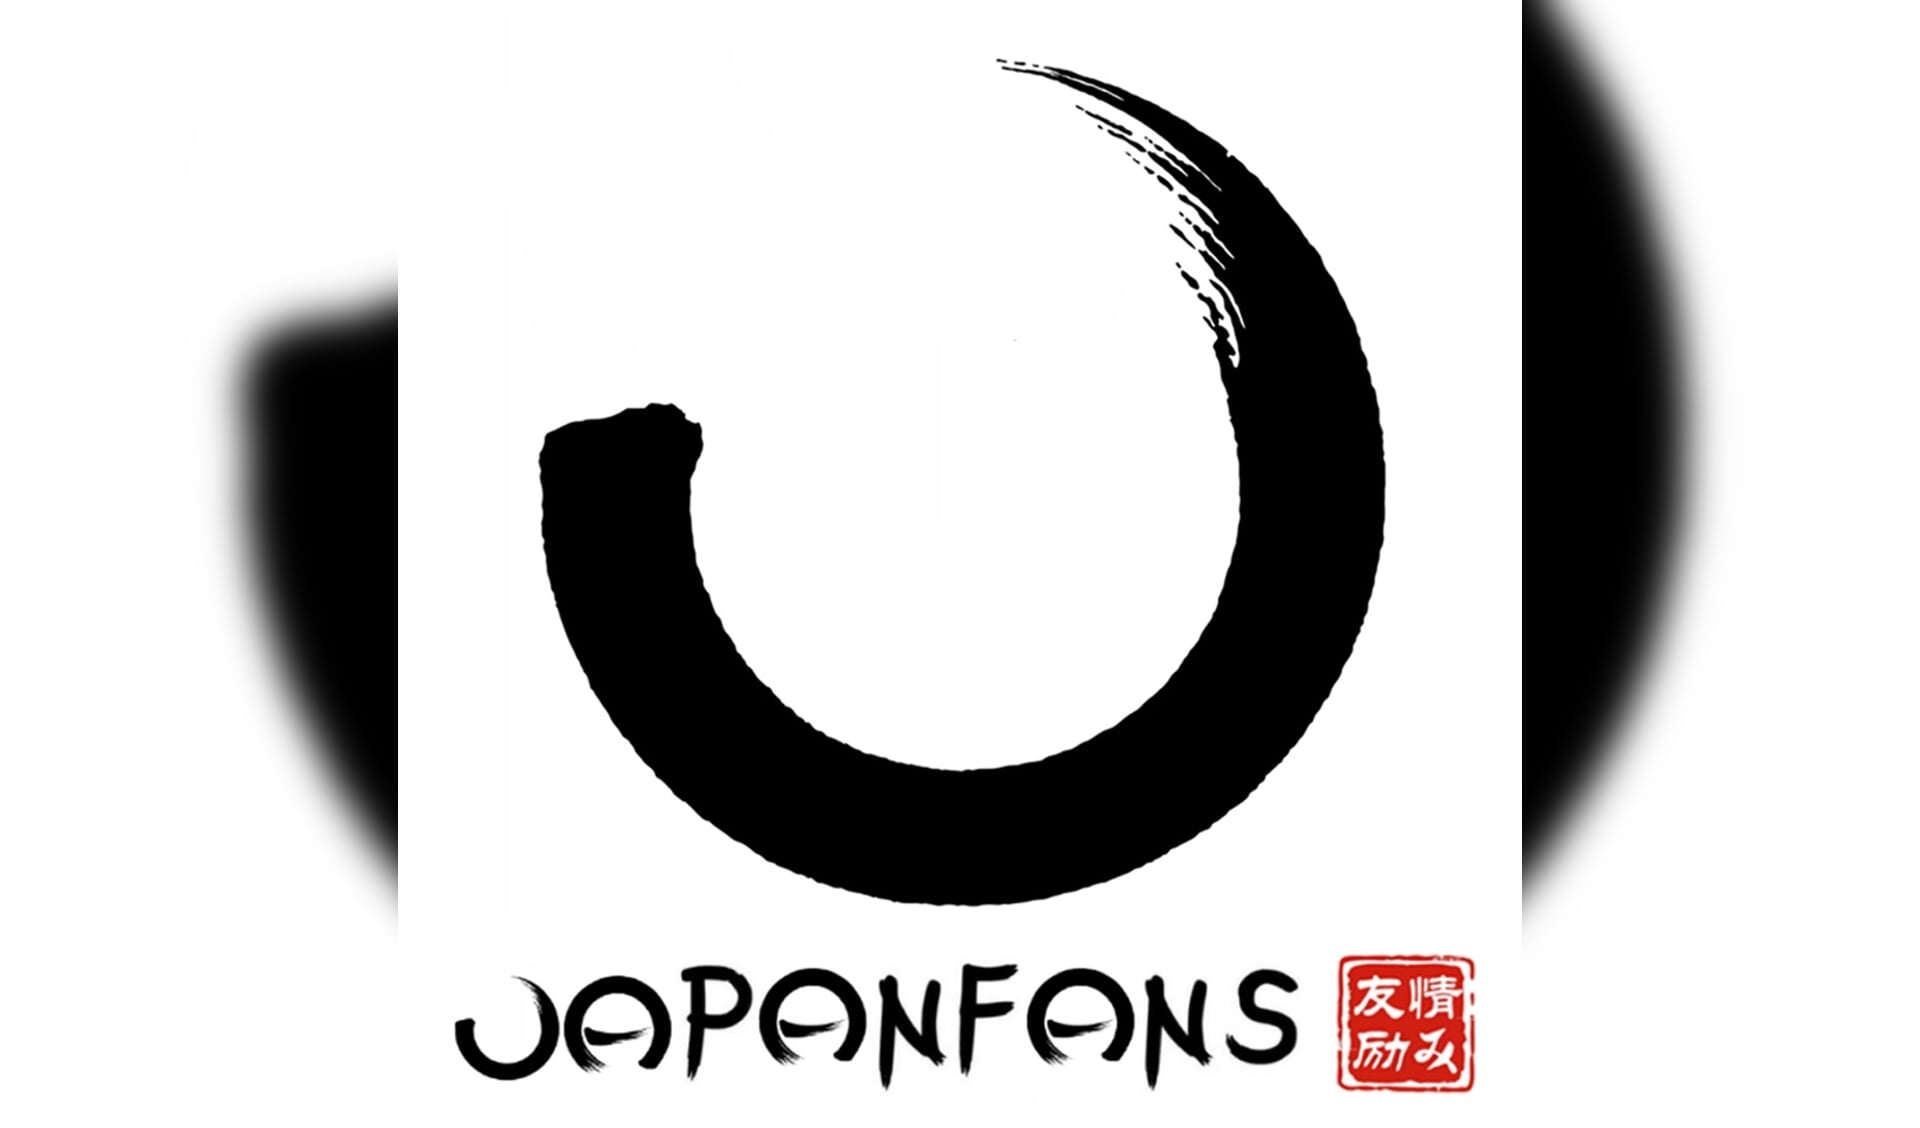 Het originele logo van Japan Fans